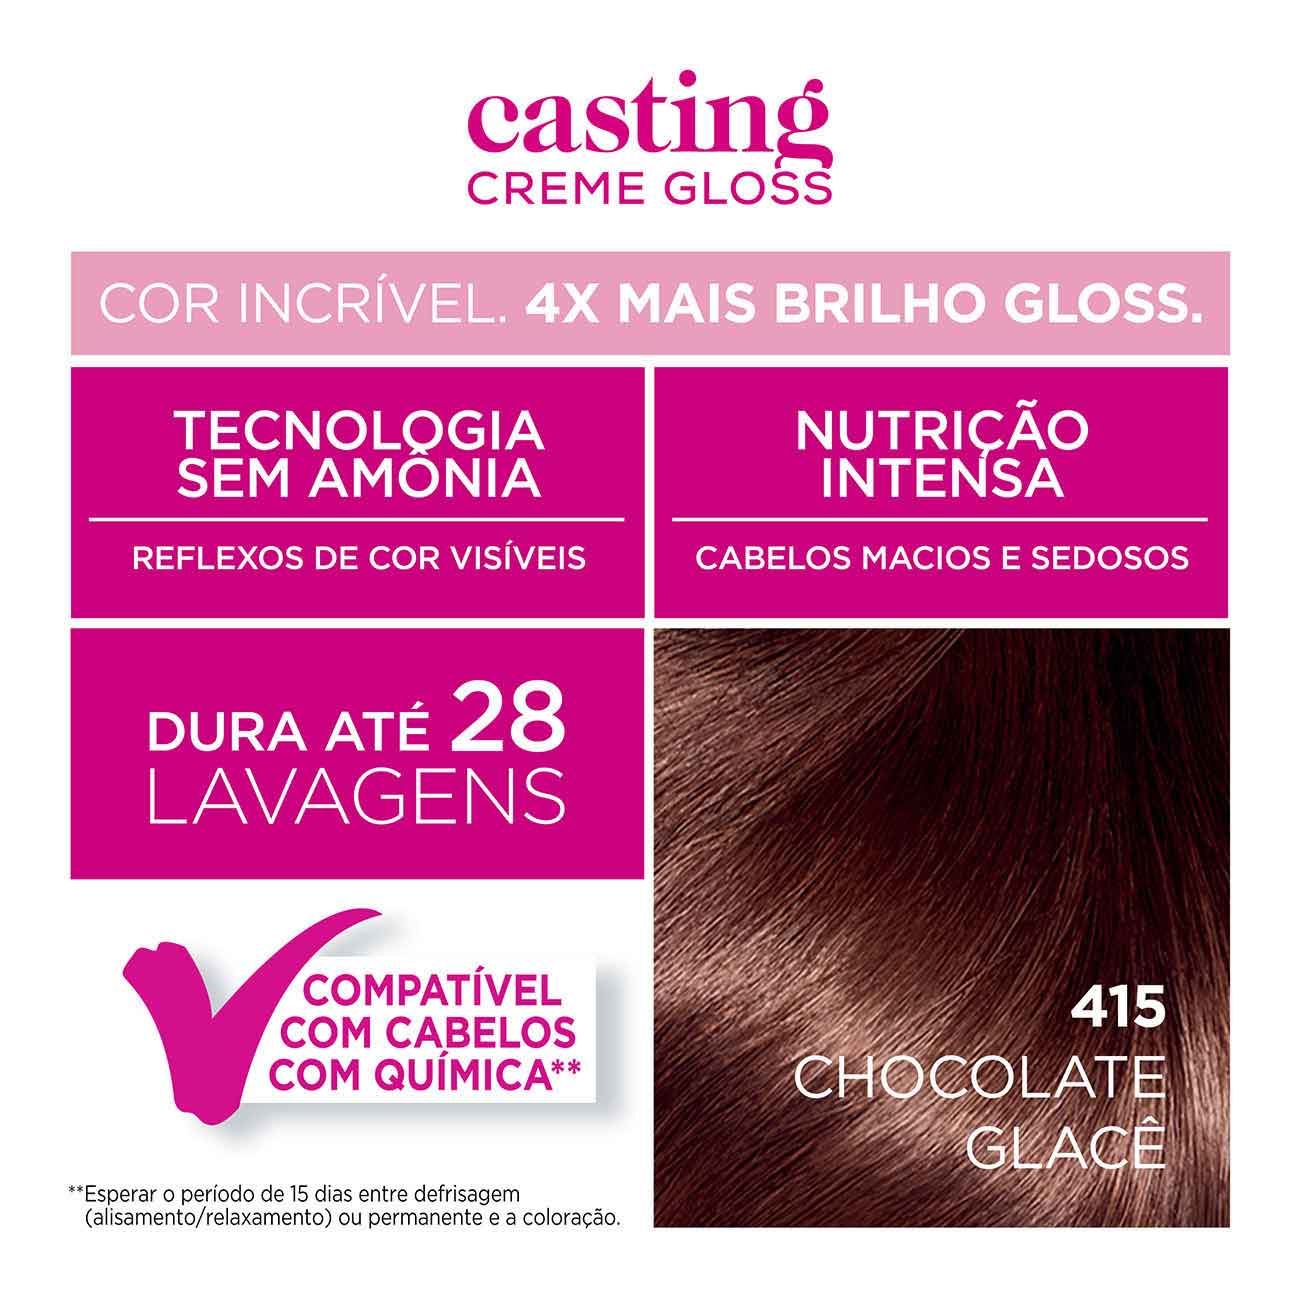 Tintura Semi-Permanente Casting Creme Gloss De L'Oral Paris 415 Chocoalte Glac